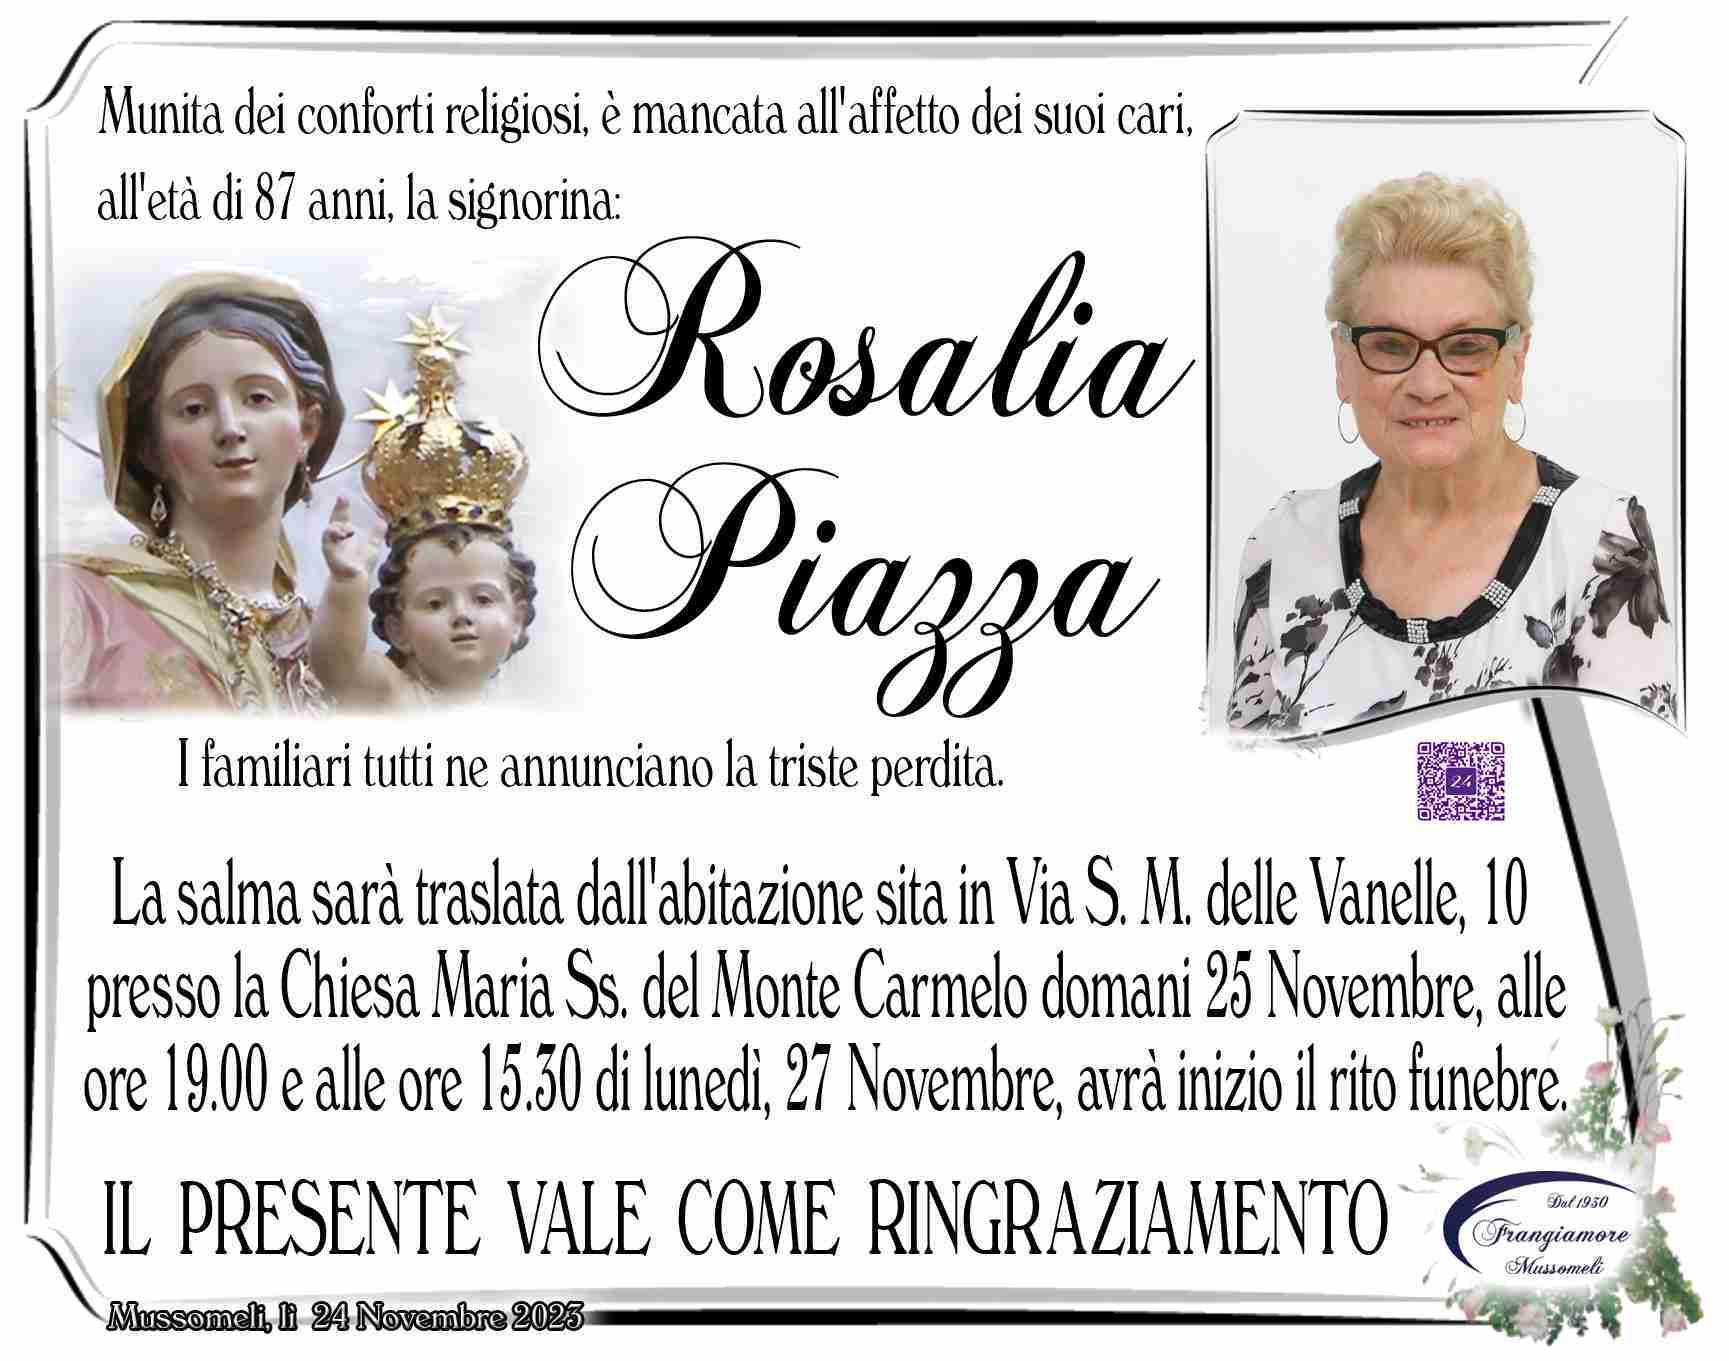 Rosalia Piazza